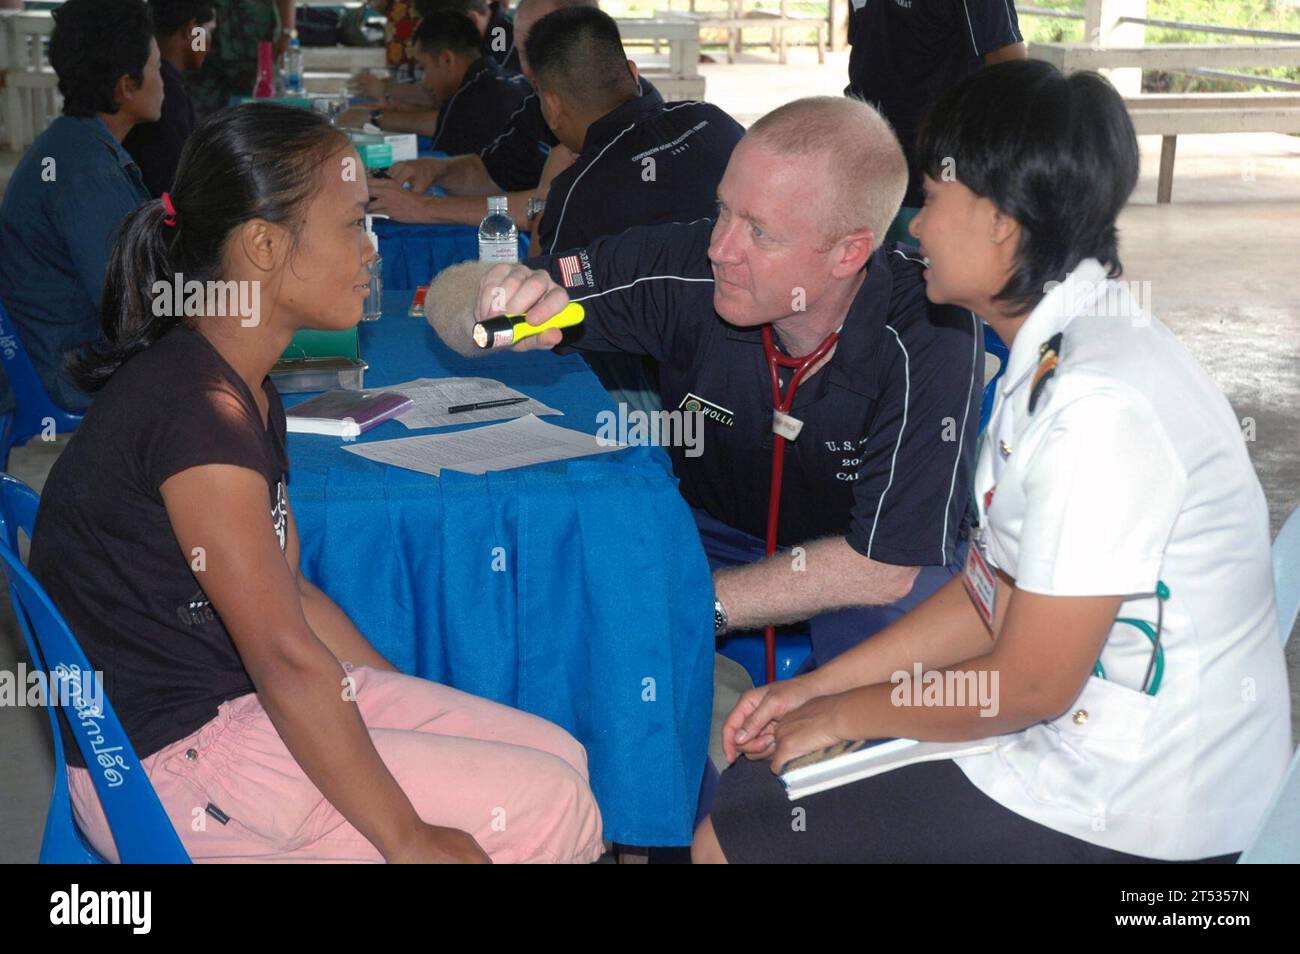 0706197783B-003 BAN SAMSAN, Thailandia (19 giugno 2007) - Cmdr. Warren Woollin, assegnato all'unità operativa di supporto sanitario Detachment Golf Great Lakes, esegue un esame medico di routine su un cittadino tailandese, con l'assistenza di un'infermiera dell'esercito reale thailandese durante un progetto di azione civile medica (MEDCAP) in un villaggio locale durante l'esercizio cooperazione afloat Readiness and Training (KARAT) 2007. KARAT è una serie programmata di esercitazioni militari bilaterali con diverse nazioni del sud-est asiatico progettate per migliorare l'interoperabilità dei rispettivi servizi marittimi. Marina degli Stati Uniti Foto Stock